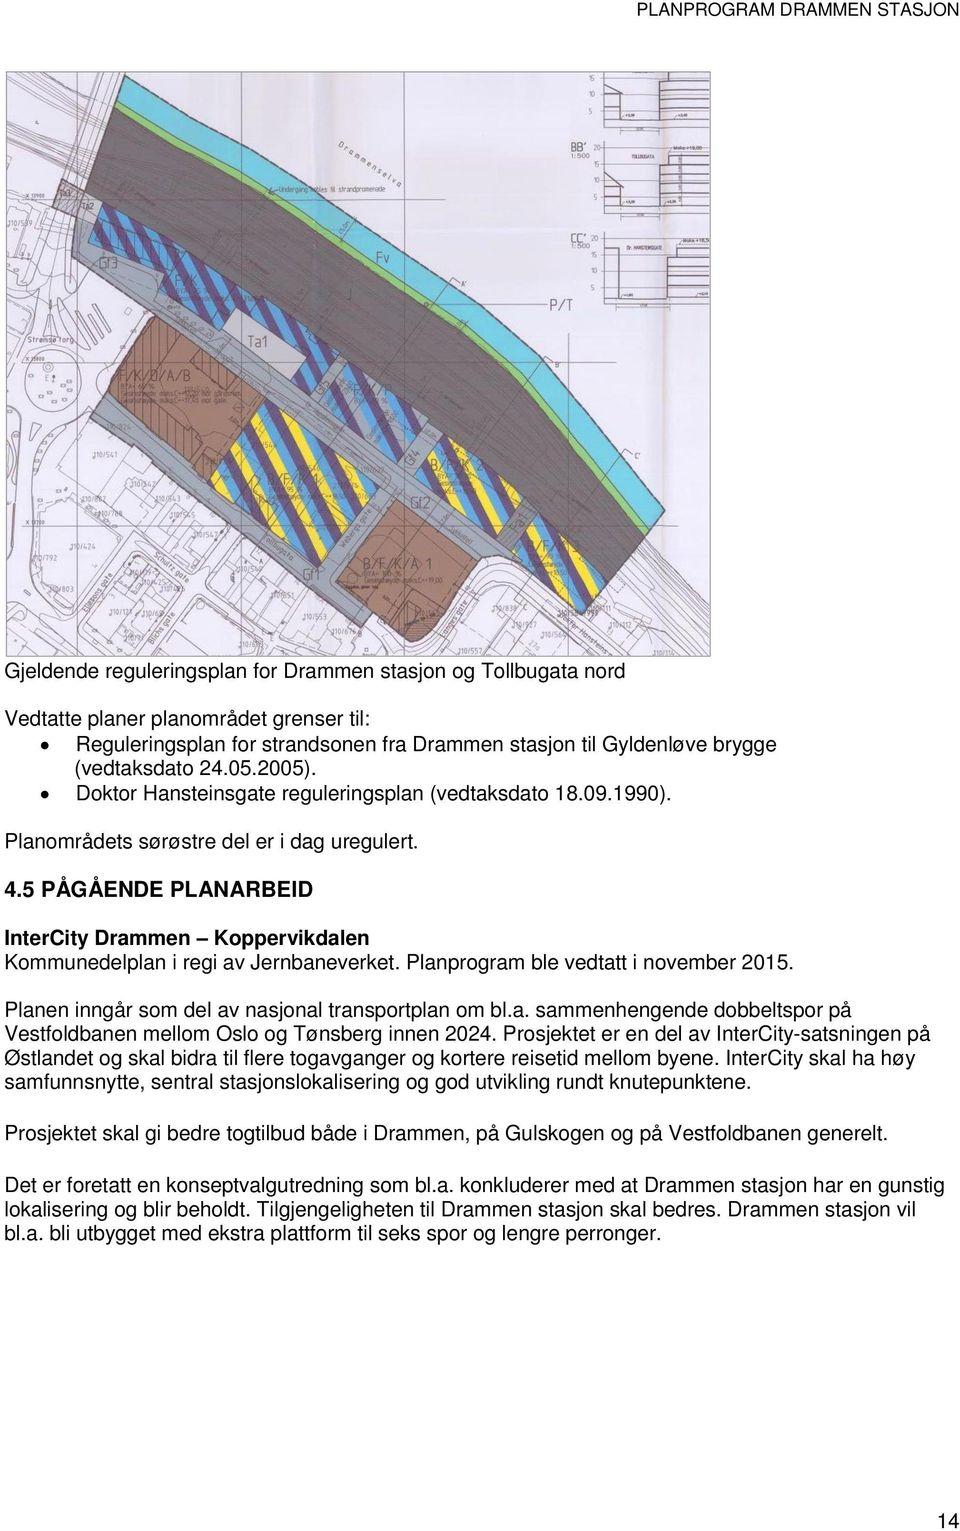 5 PÅGÅENDE PLANARBEID InterCity Drammen Koppervikdalen Kommunedelplan i regi av Jernbaneverket. Planprogram ble vedtatt i november 2015. Planen inngår som del av nasjonal transportplan om bl.a. sammenhengende dobbeltspor på Vestfoldbanen mellom Oslo og Tønsberg innen 2024.